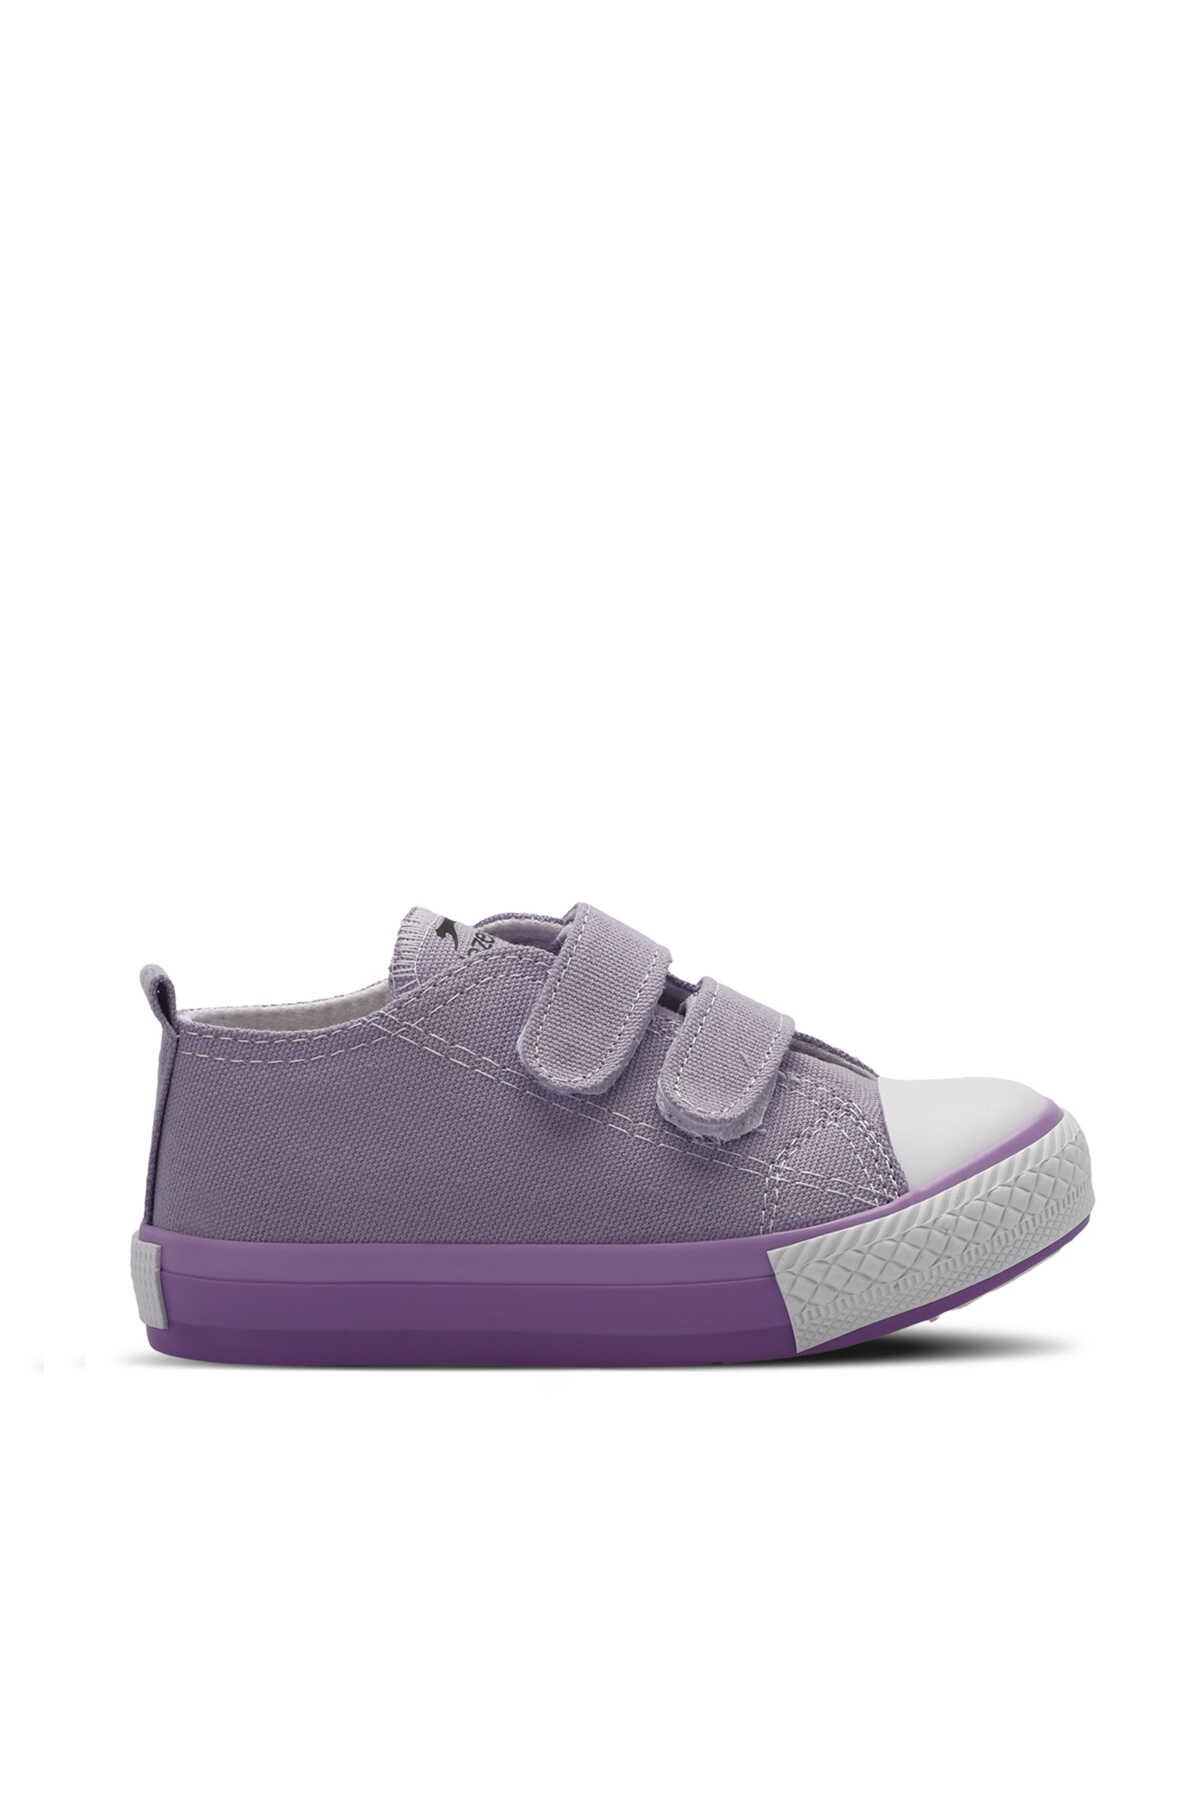 Slazenger - Slazenger KOALA Kız Çocuk Sneaker Ayakkabı Lila